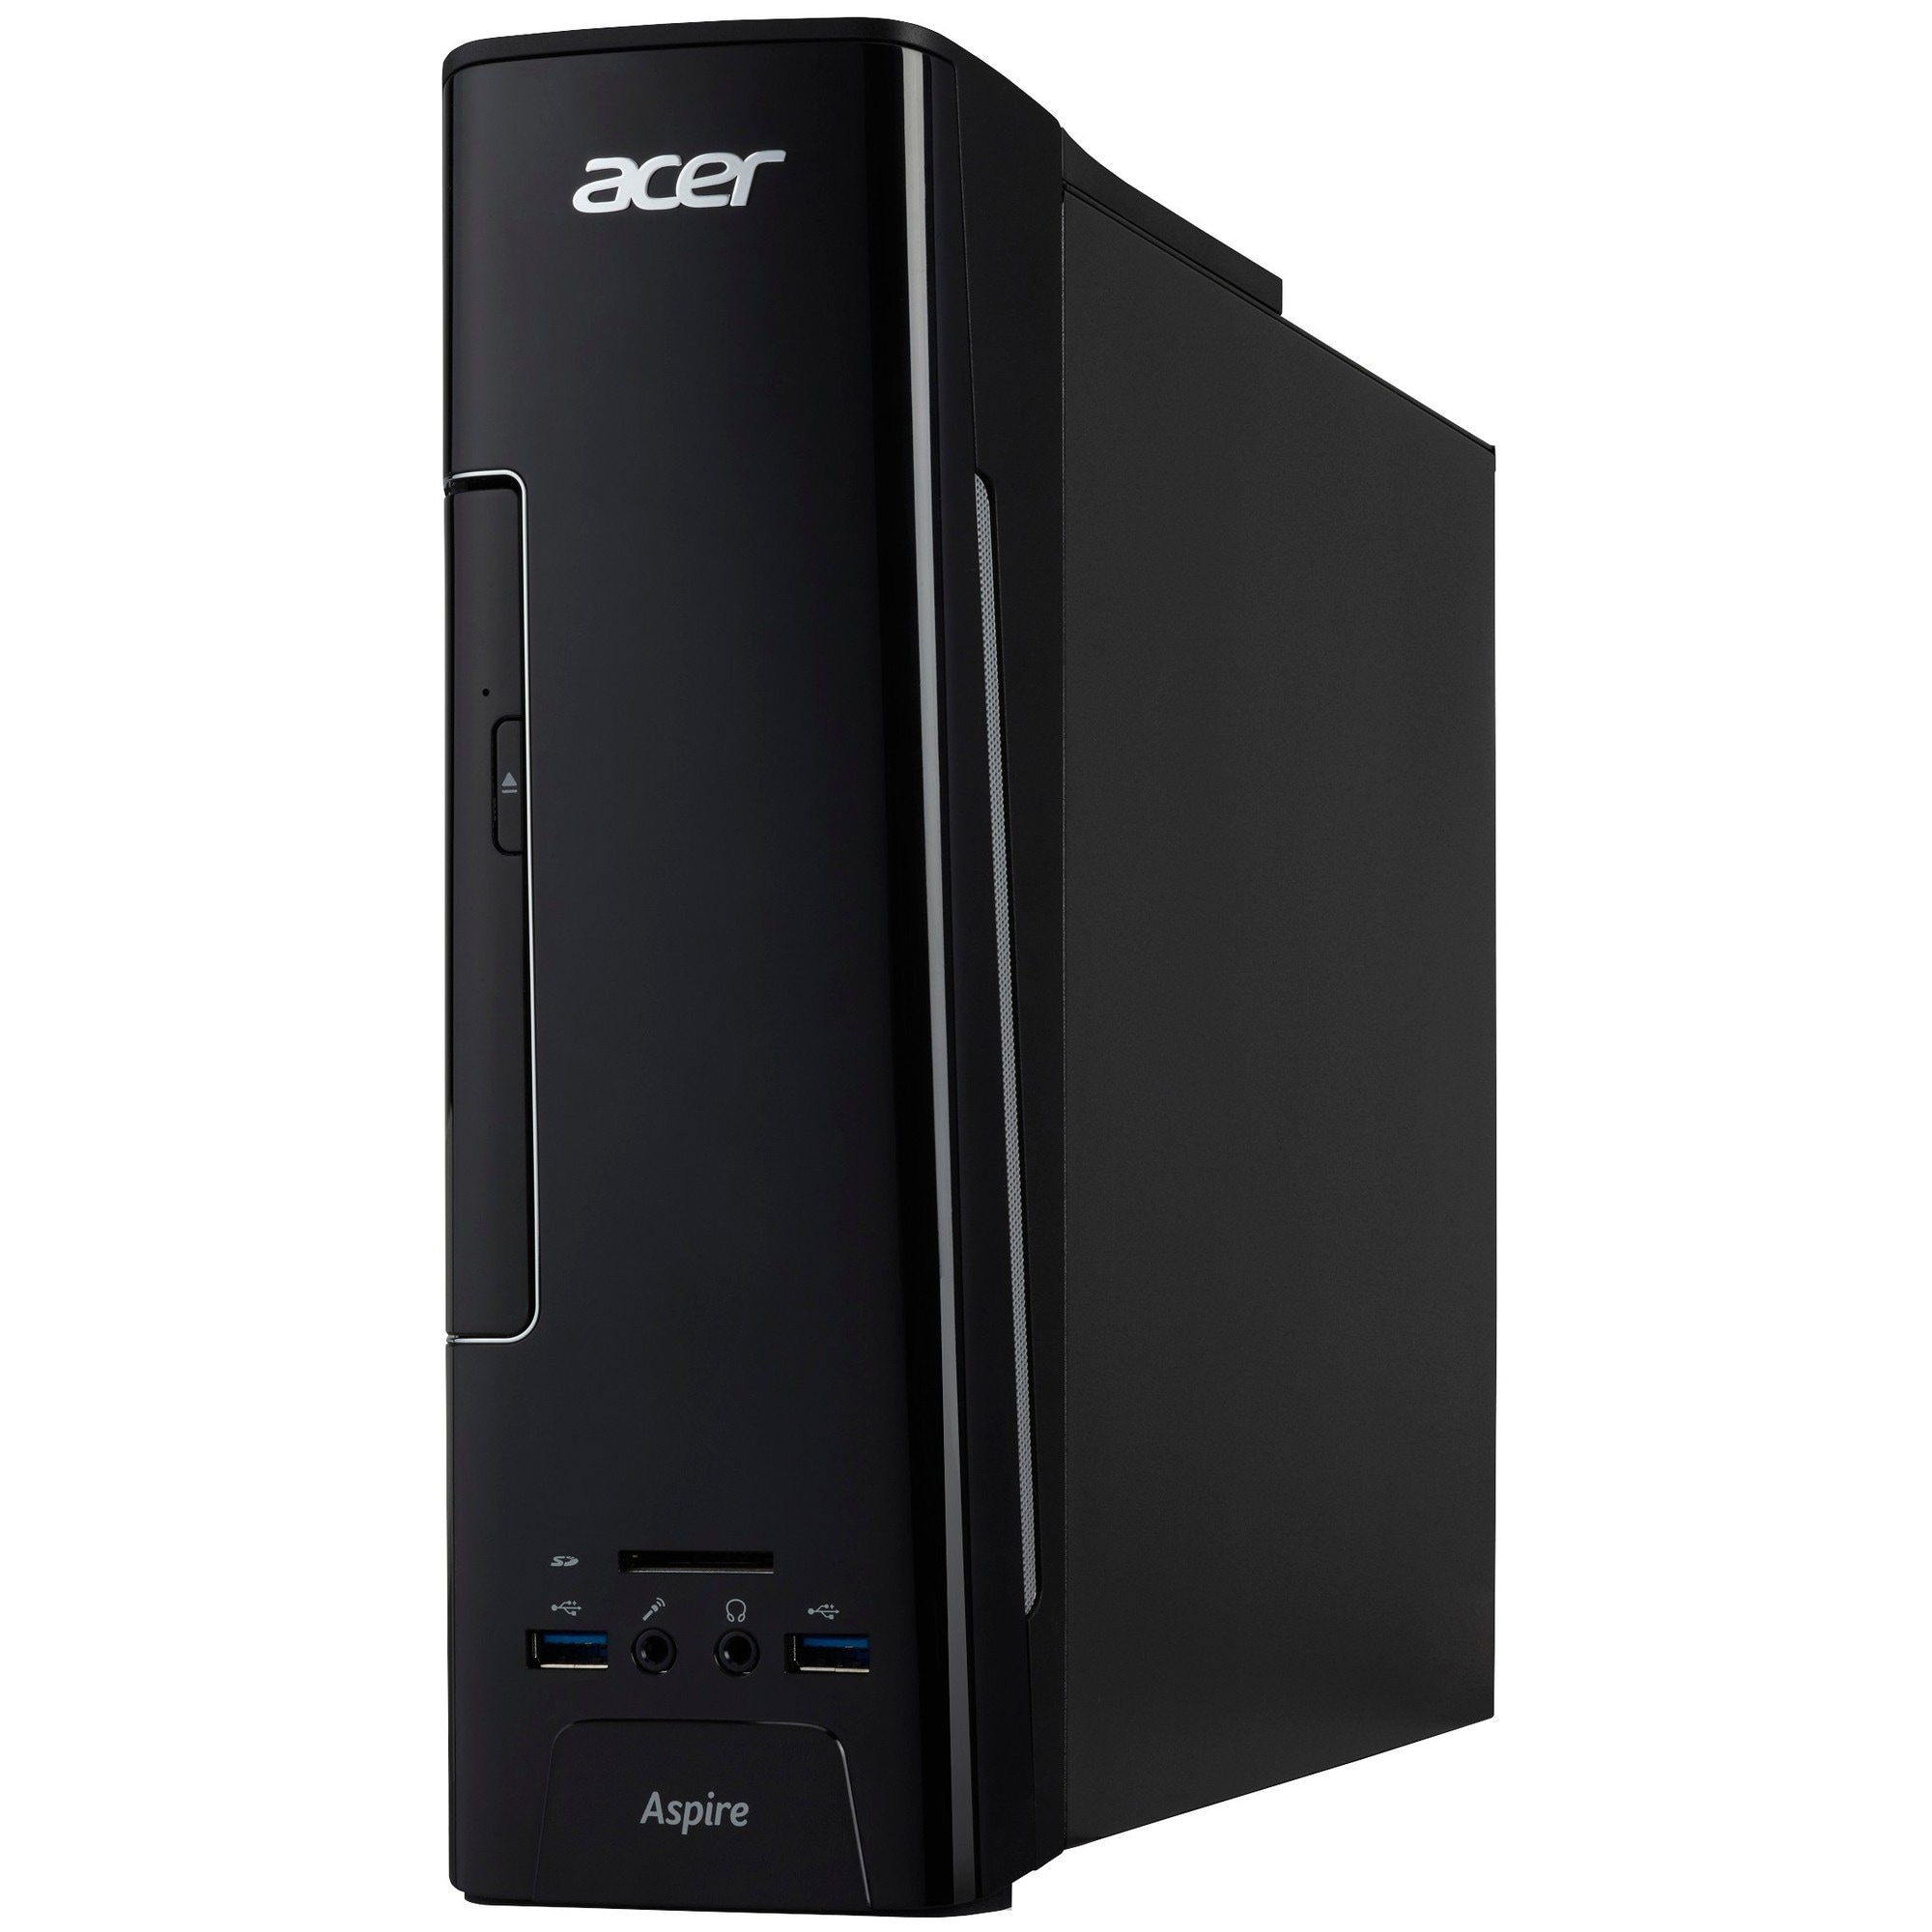 Acer Aspire XC-730 stationær computer | Elgiganten